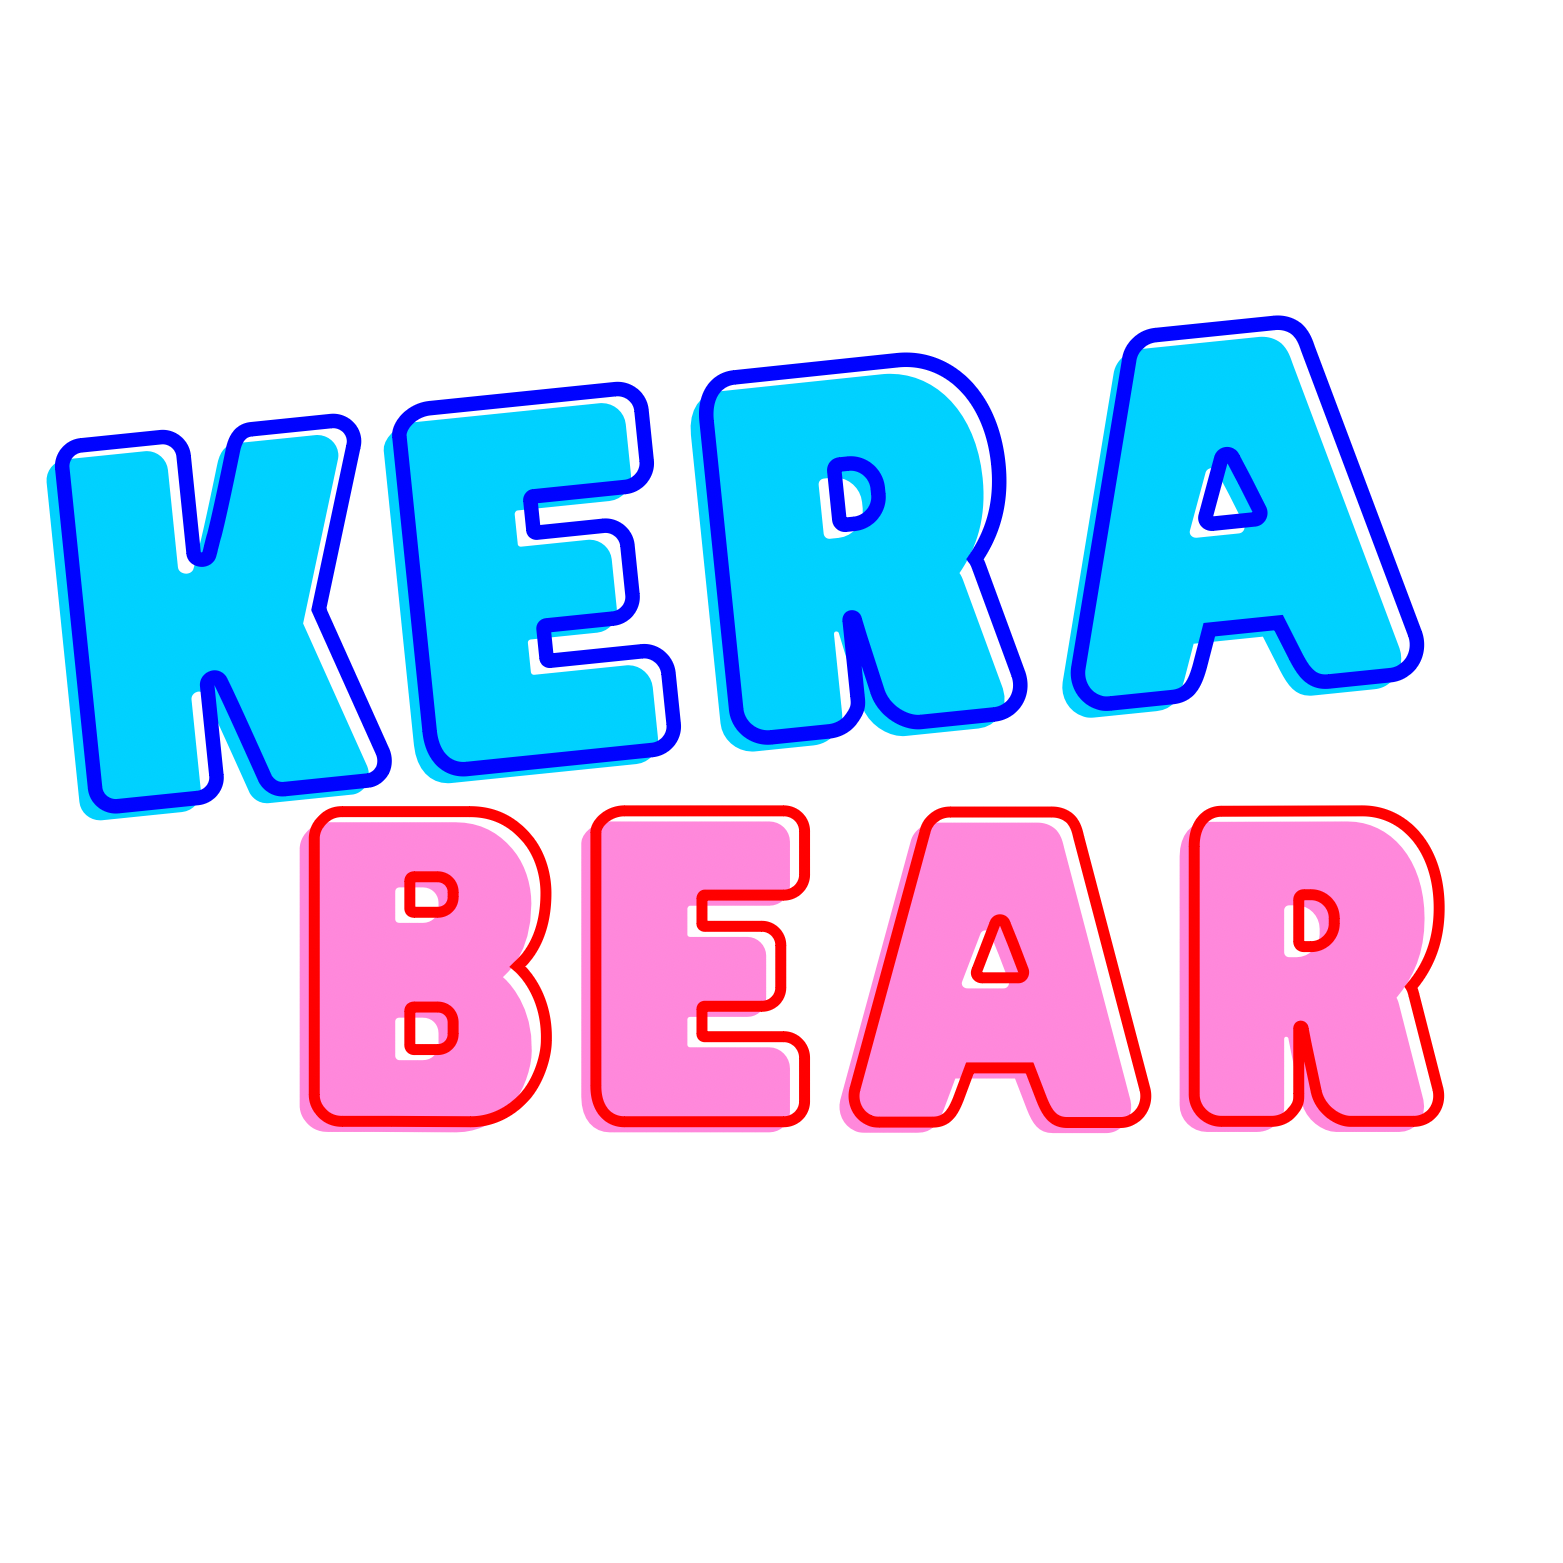 Kera Bear